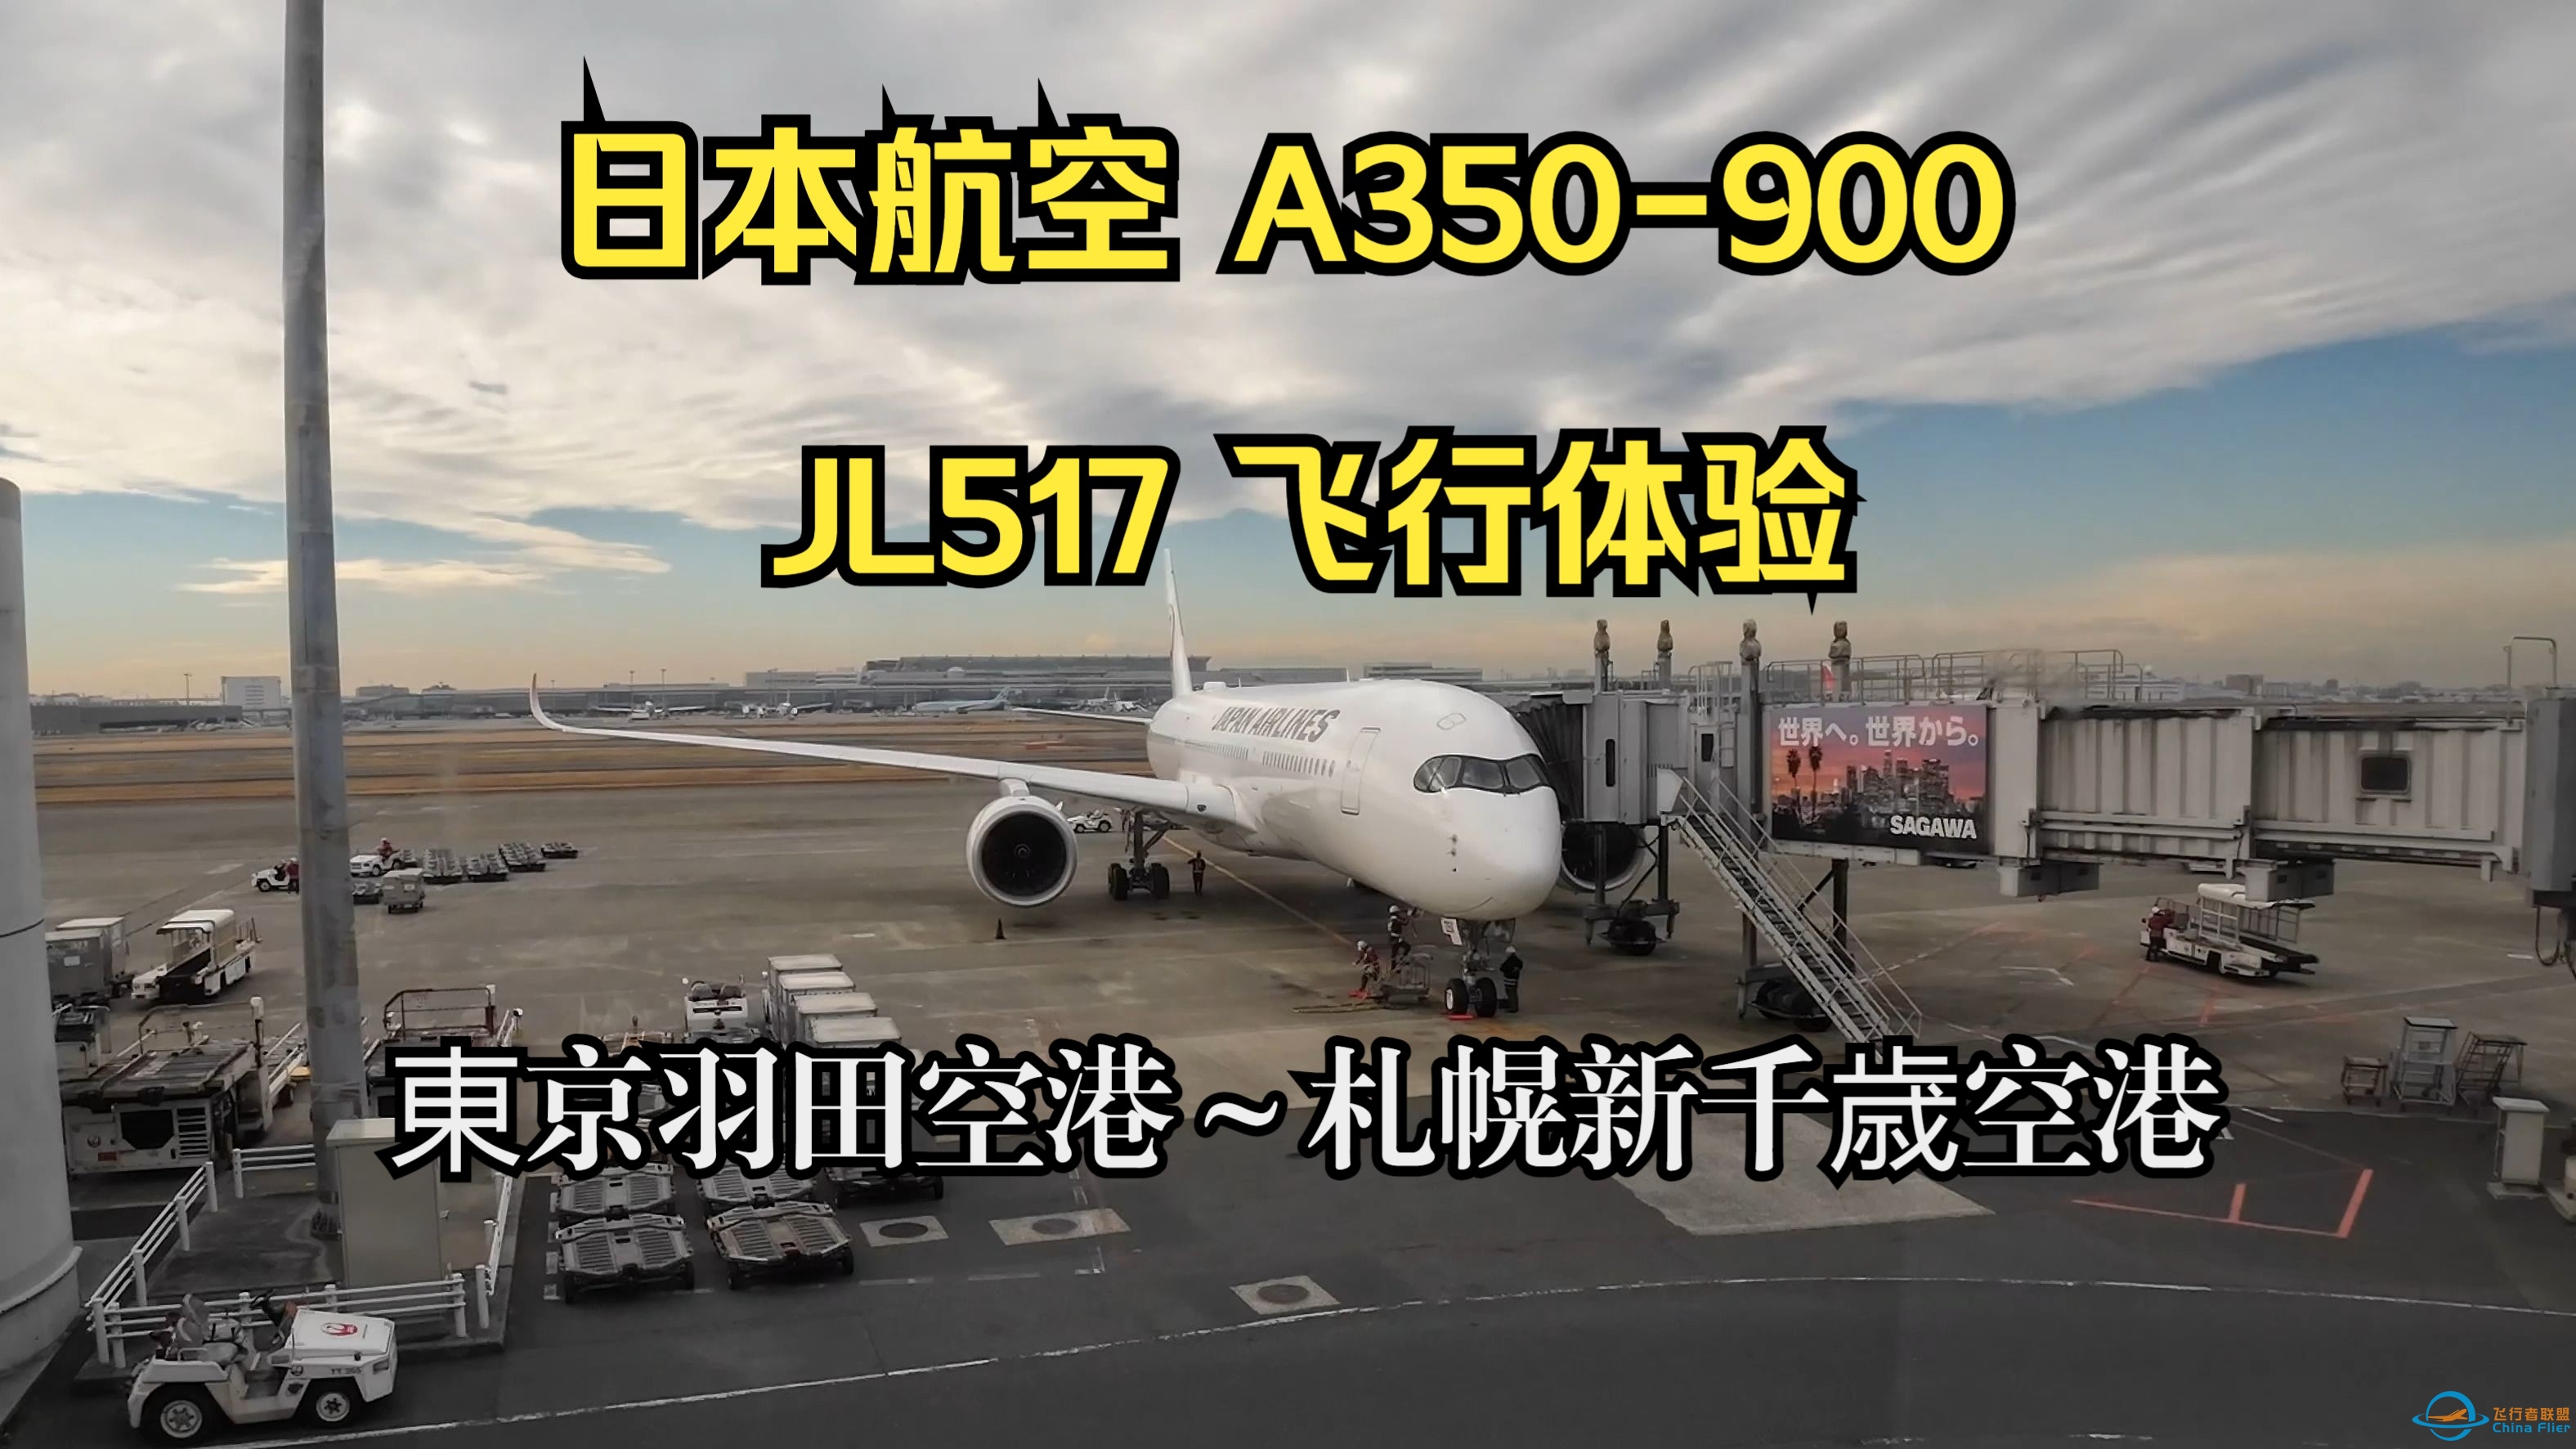 日本航空 A350-900 JL517 飞行体验-51 